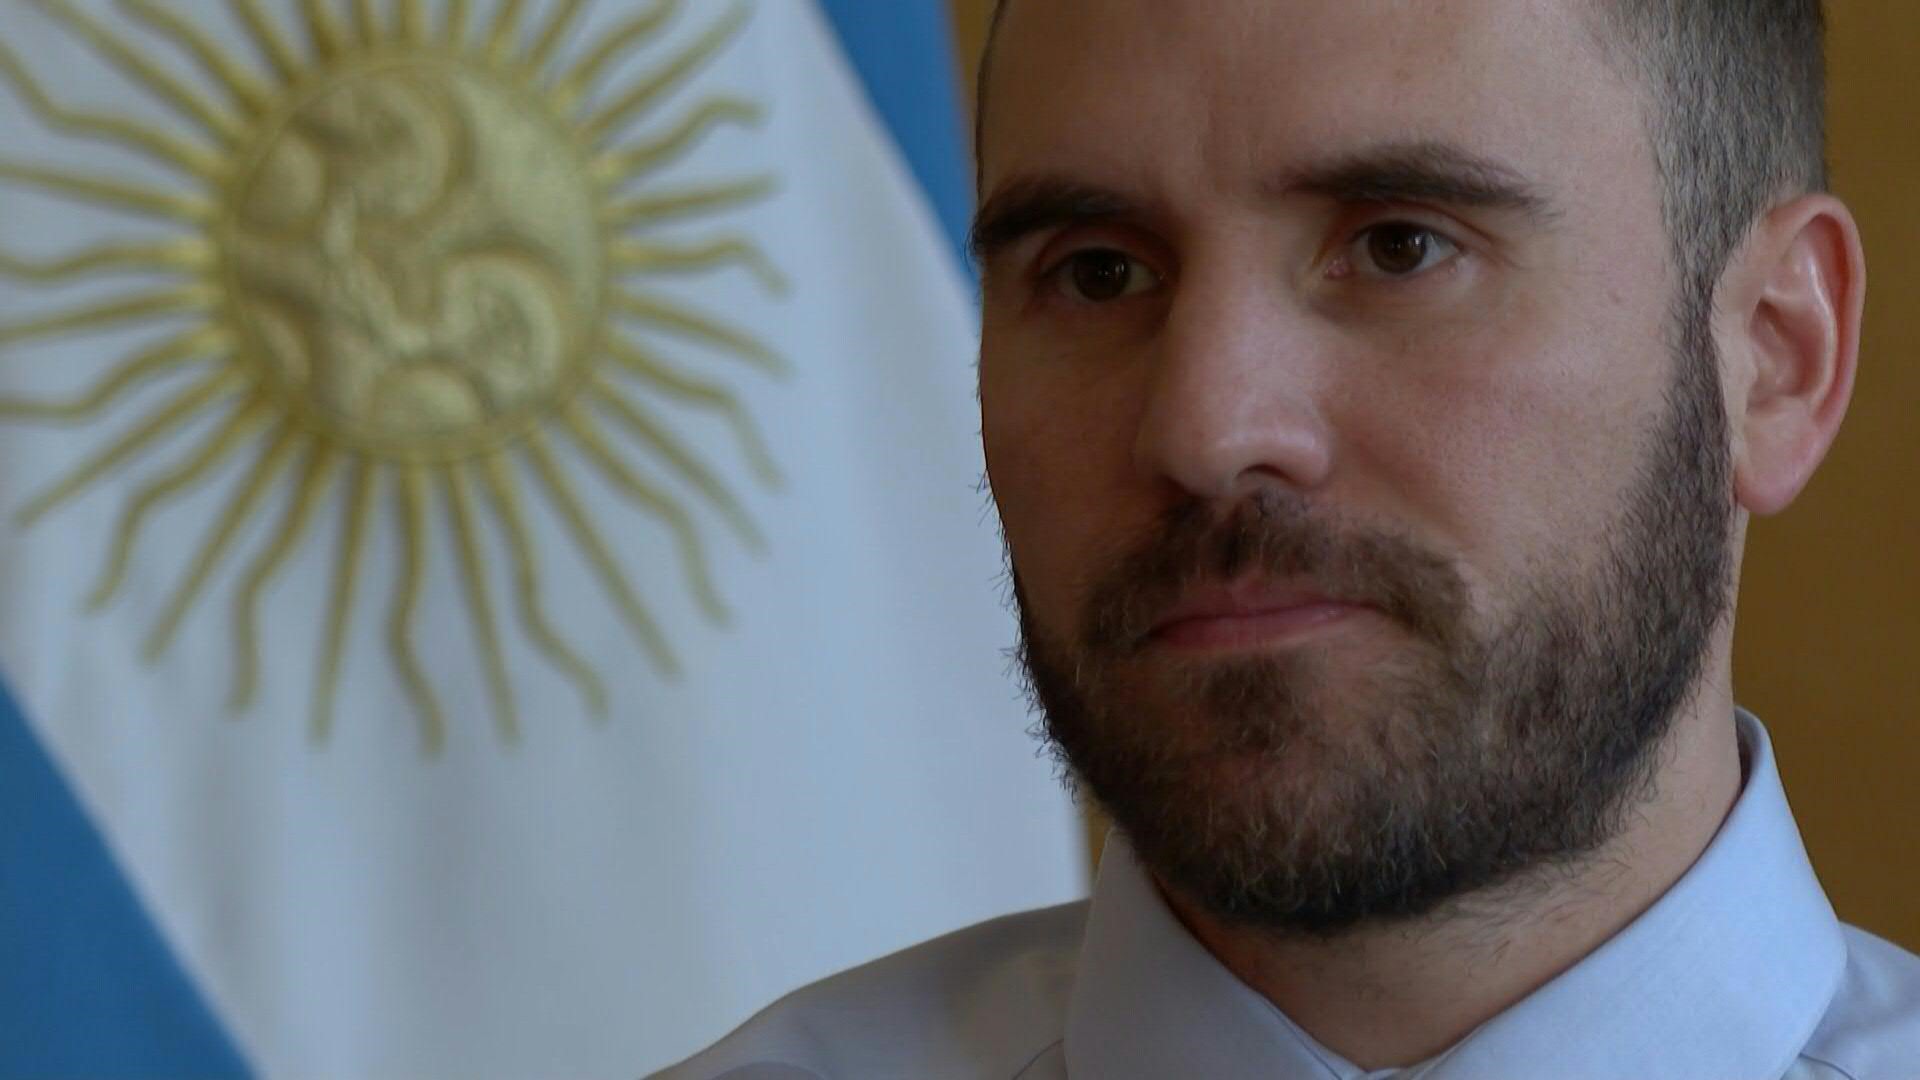 El ministro de Economía de Argentina, Martín Guzmán, anunció el sábado su renuncia al cargo en una carta al presidente Alberto Fernández que divulgó en su cuenta de Twitter